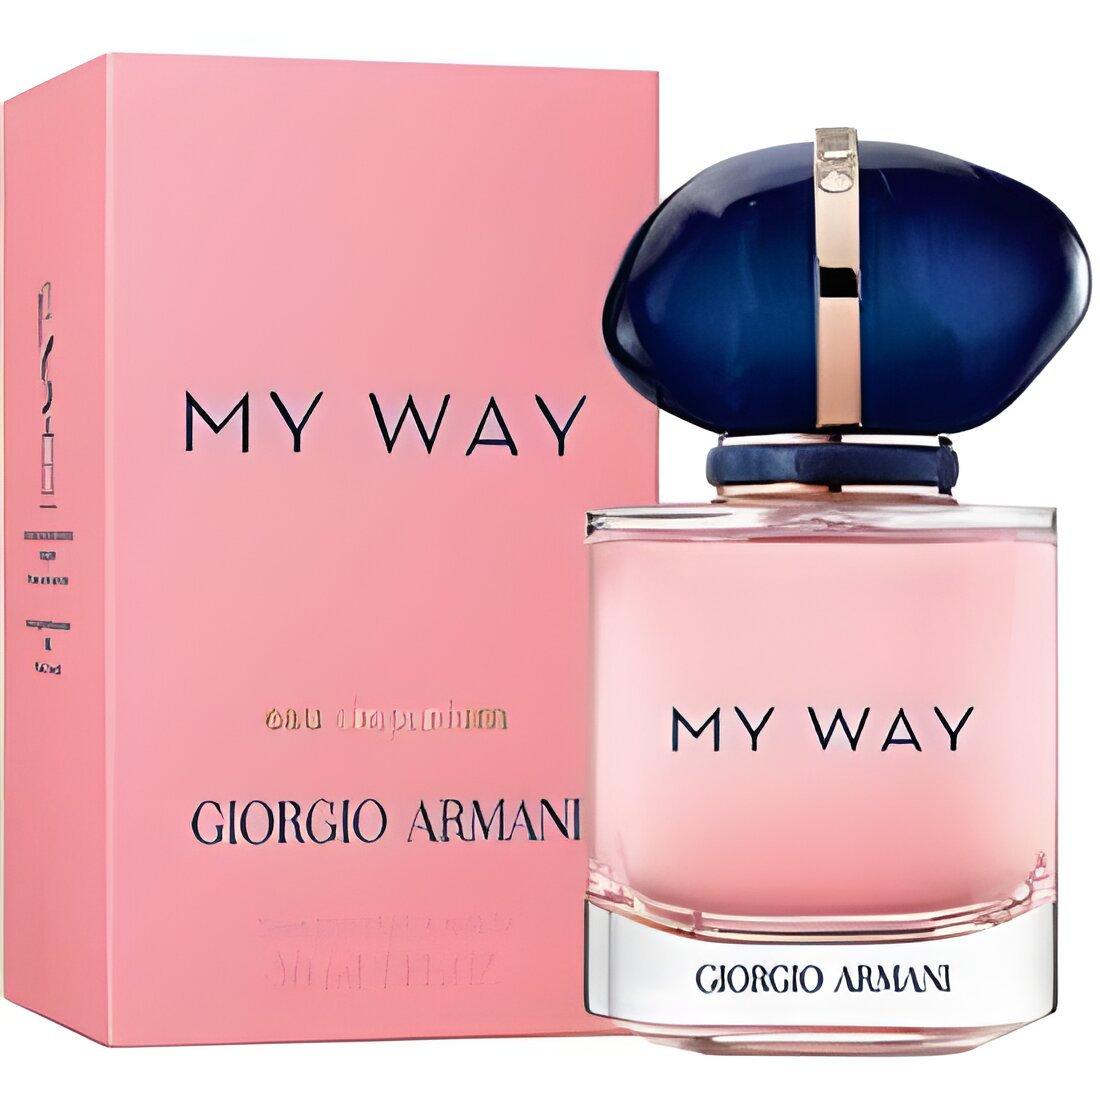 Free Giorgio Armani My Way Eau de Parfum